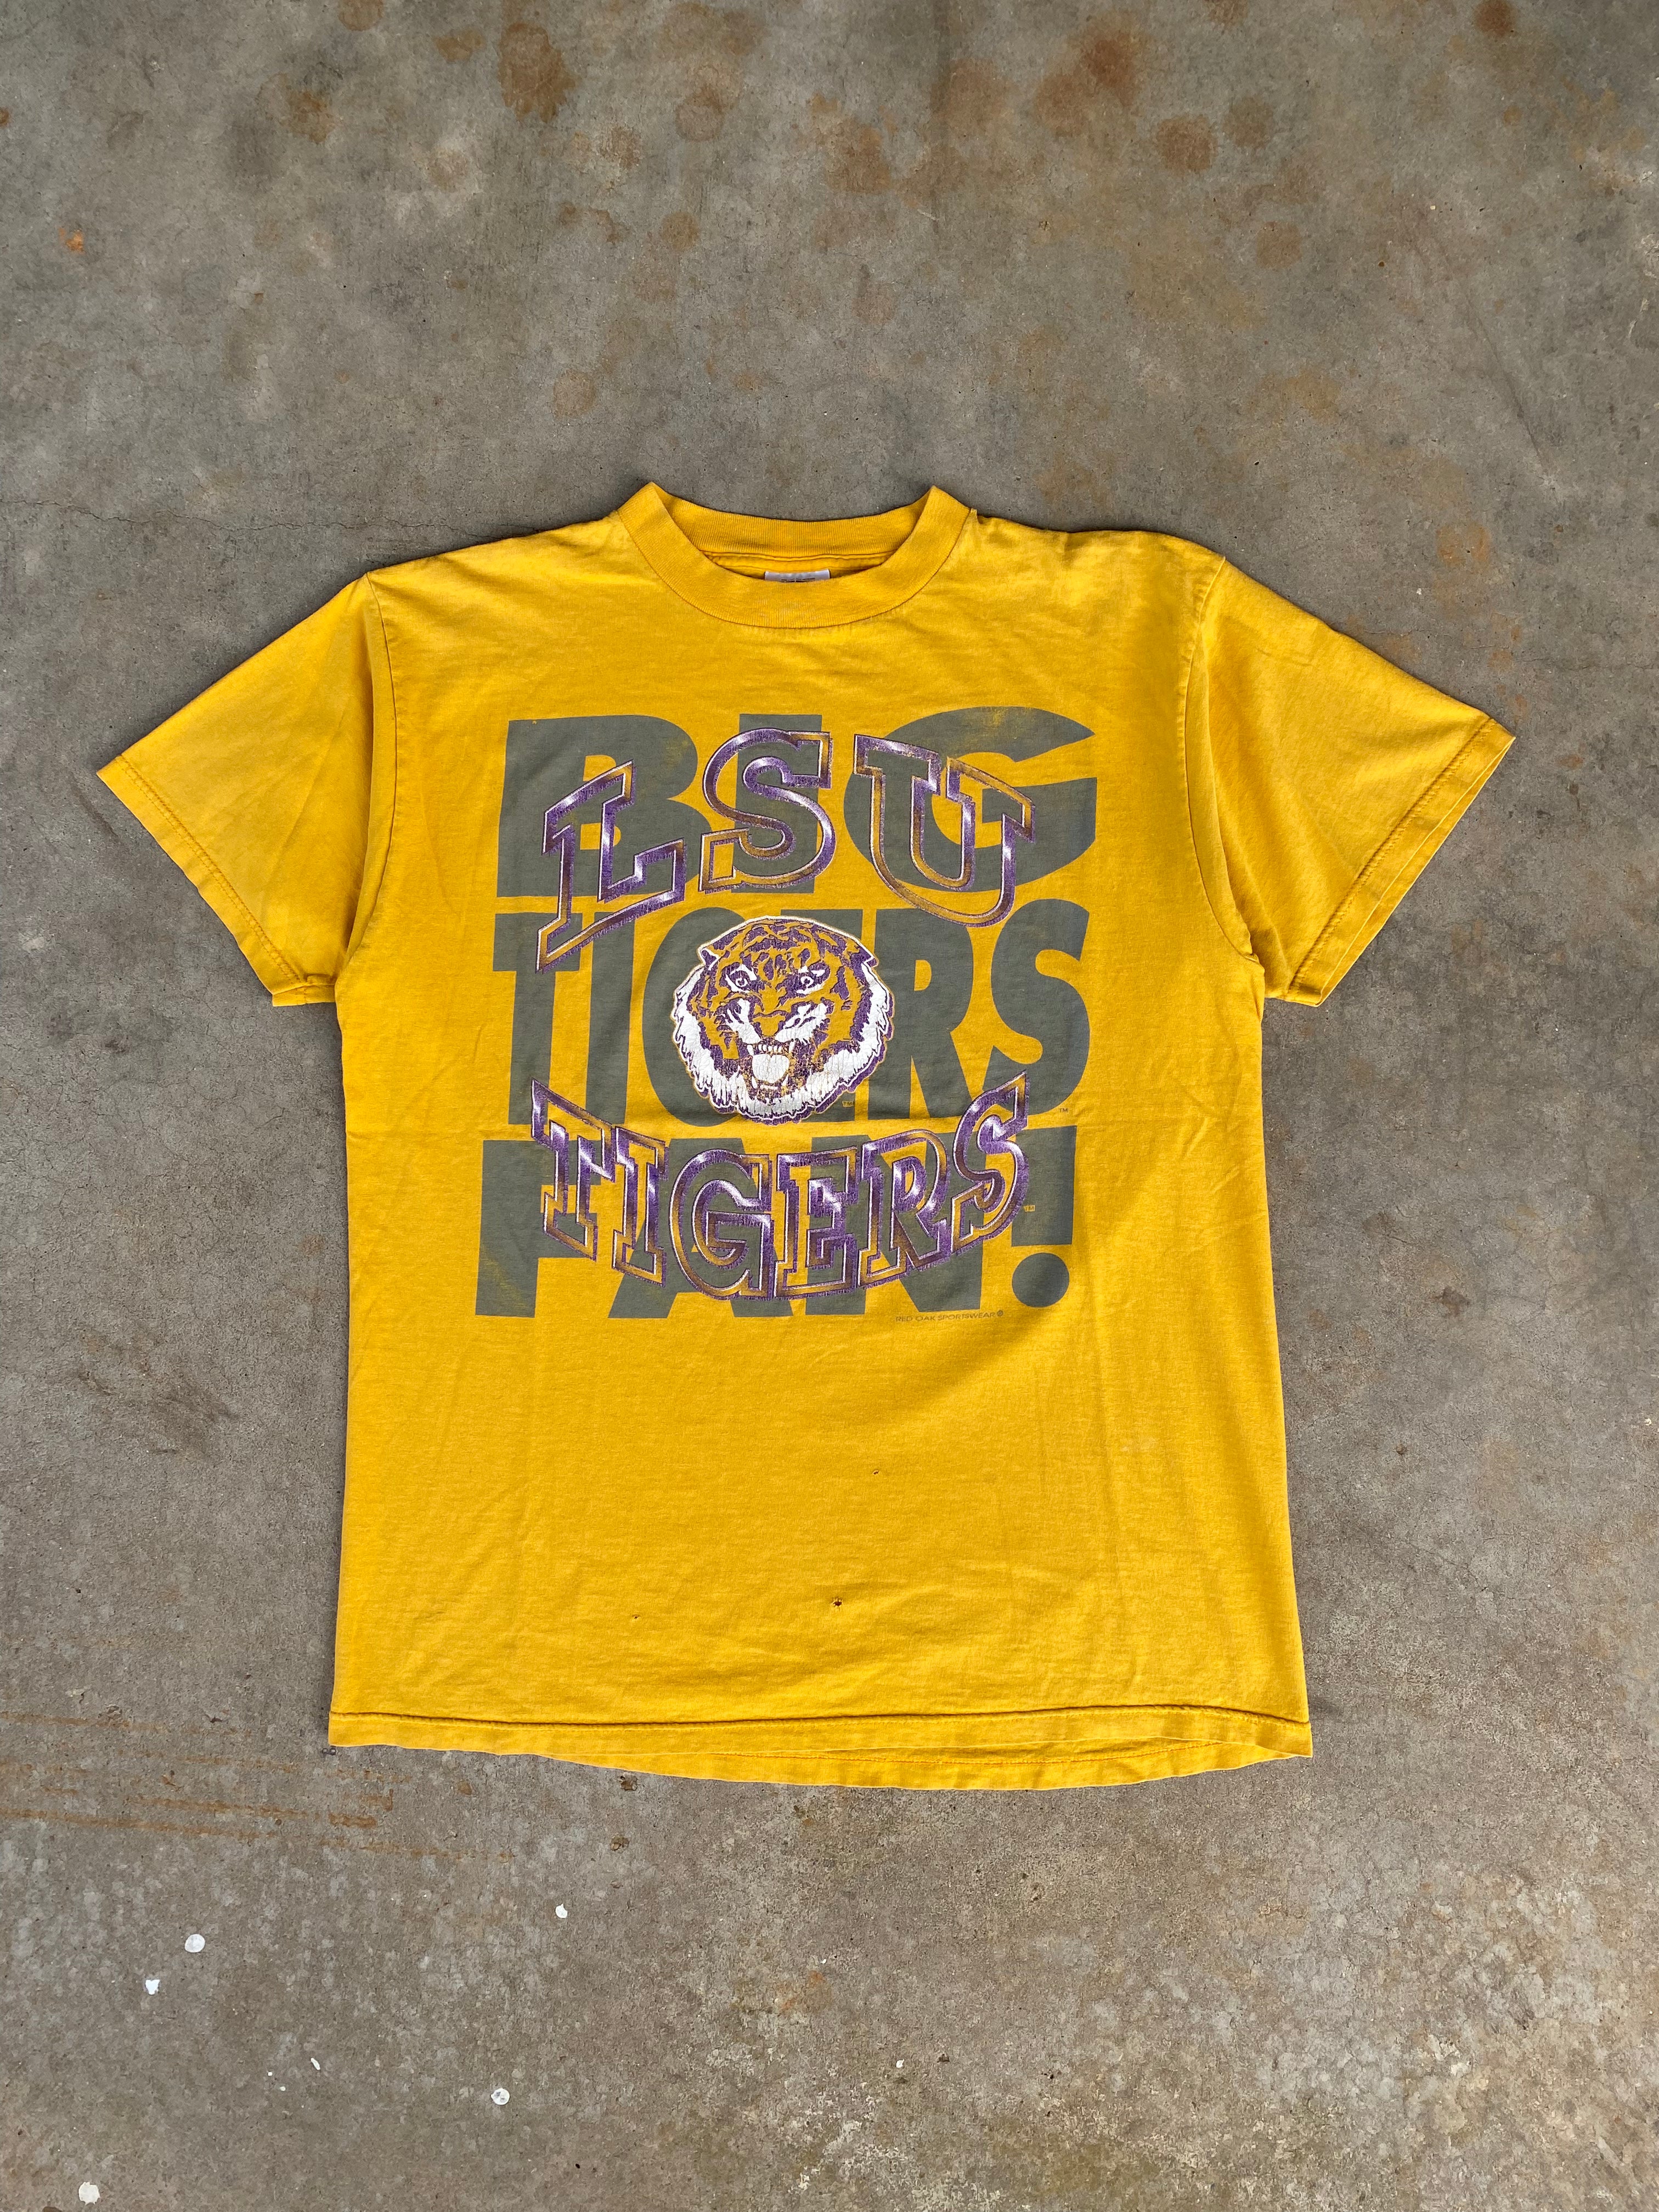 1990s LSU Tiger Distressed T-Shirt (XL)